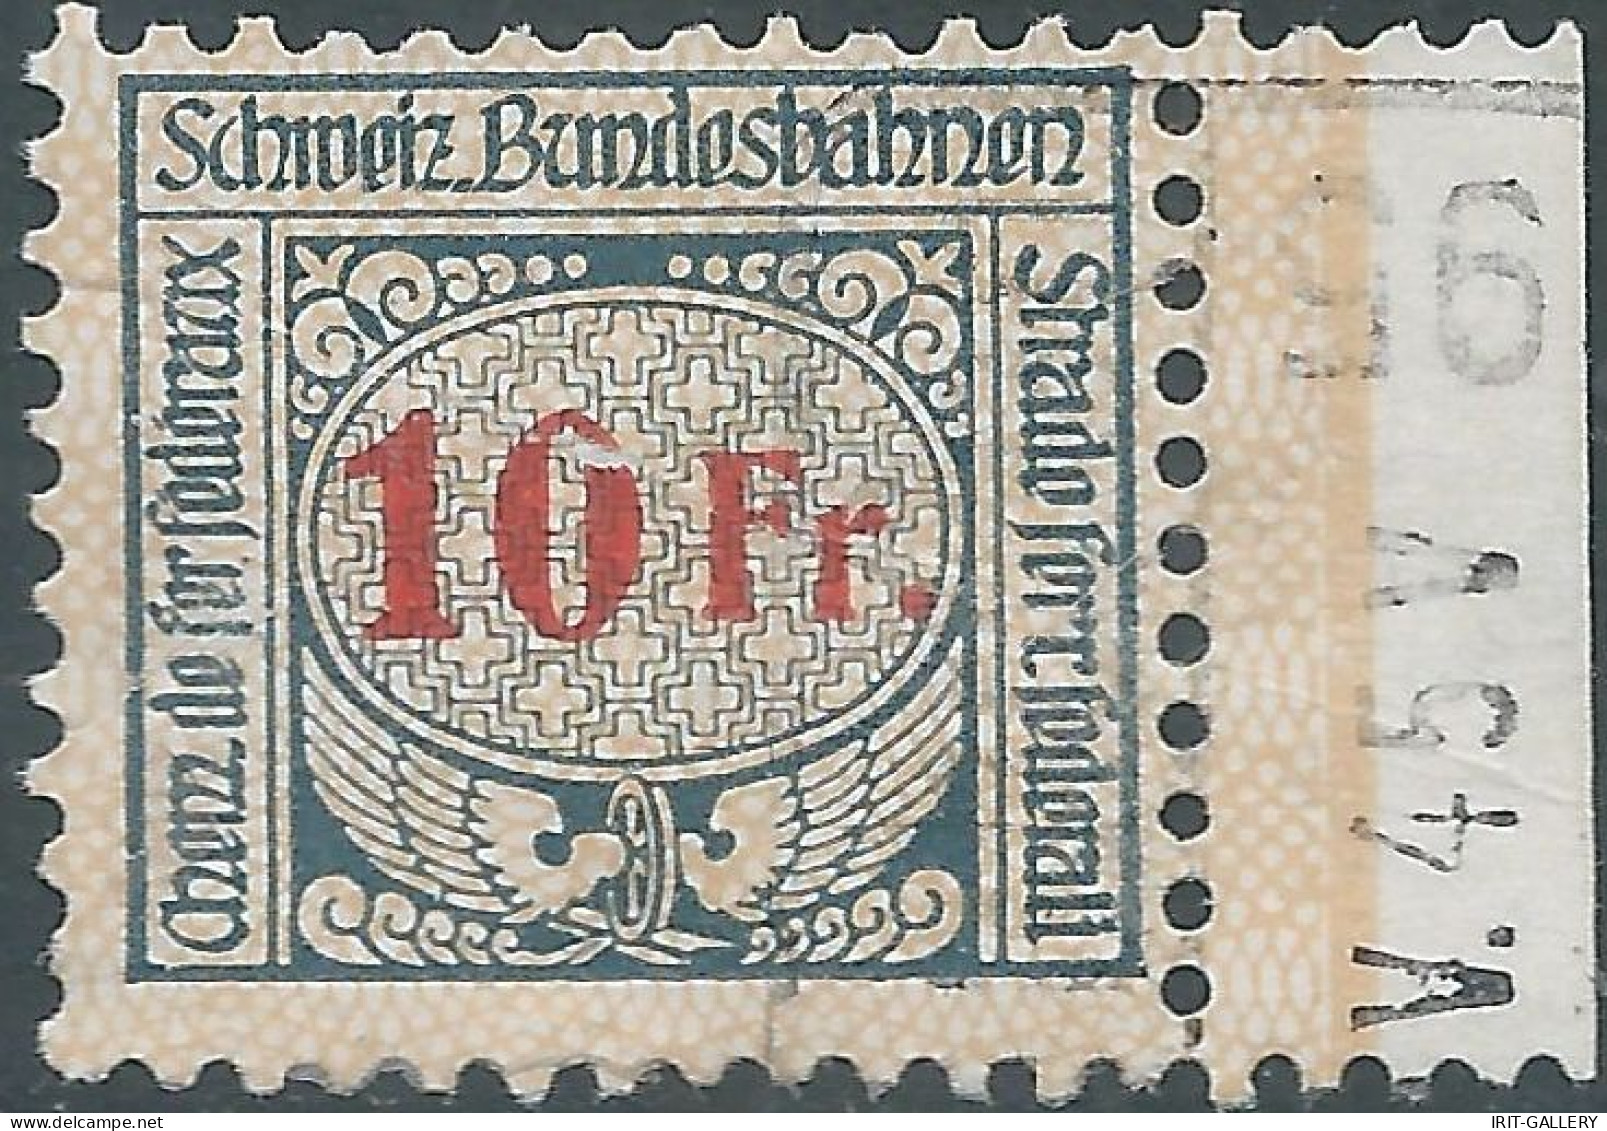 Svizzera-Switzerland-Suisse,1920/25 Revenue Stamp Tax Fiscal 10fr,SCHWEIZ.BUNDESBAHNEN-SWISS.FEDERAL RAILWAYS,Defective! - Chemins De Fer